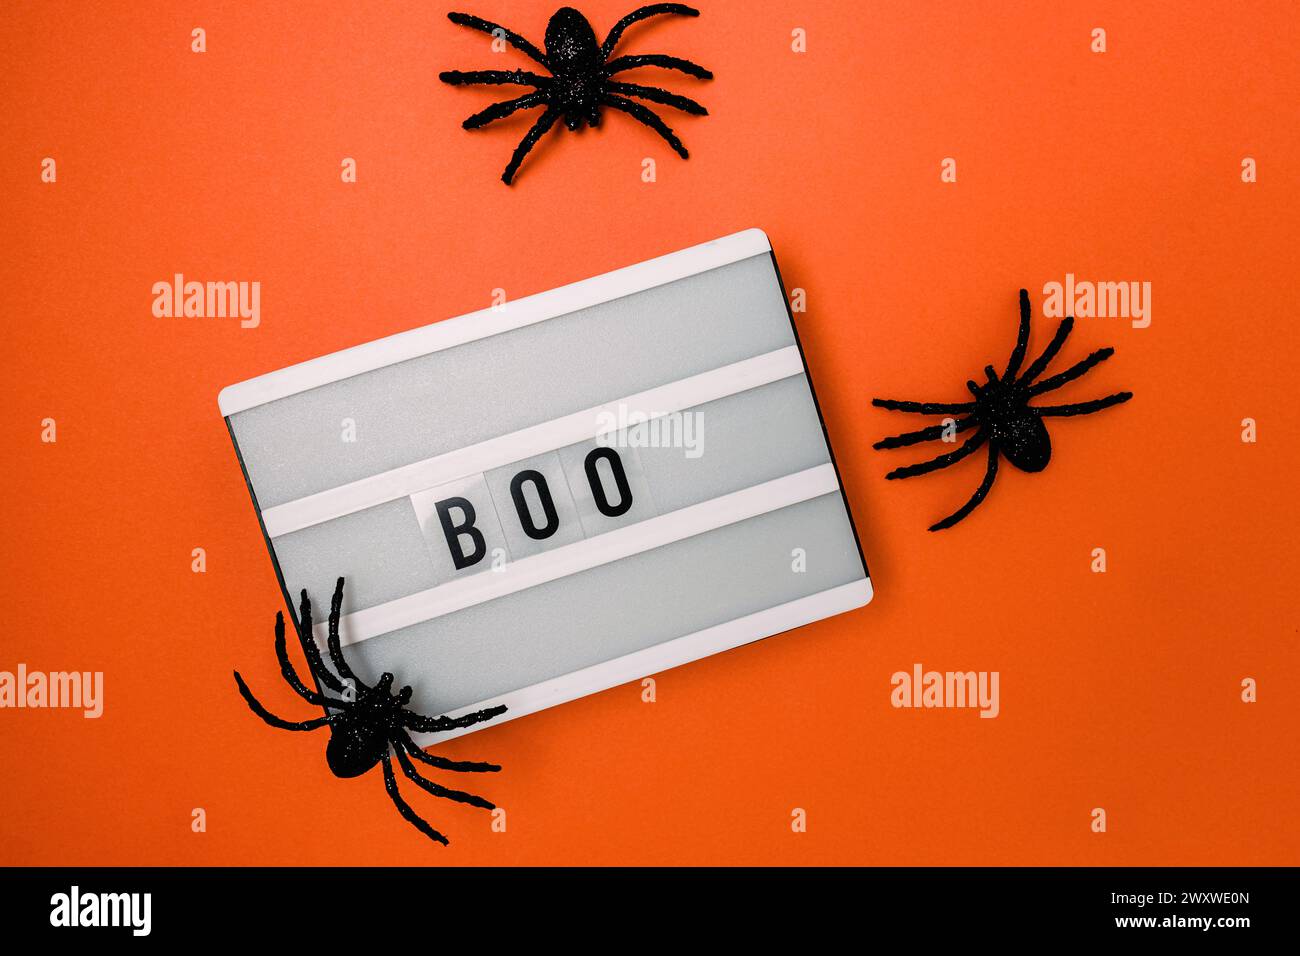 Décor minimal d'Halloween, visionneuse avec le mot Boo et araignées Banque D'Images